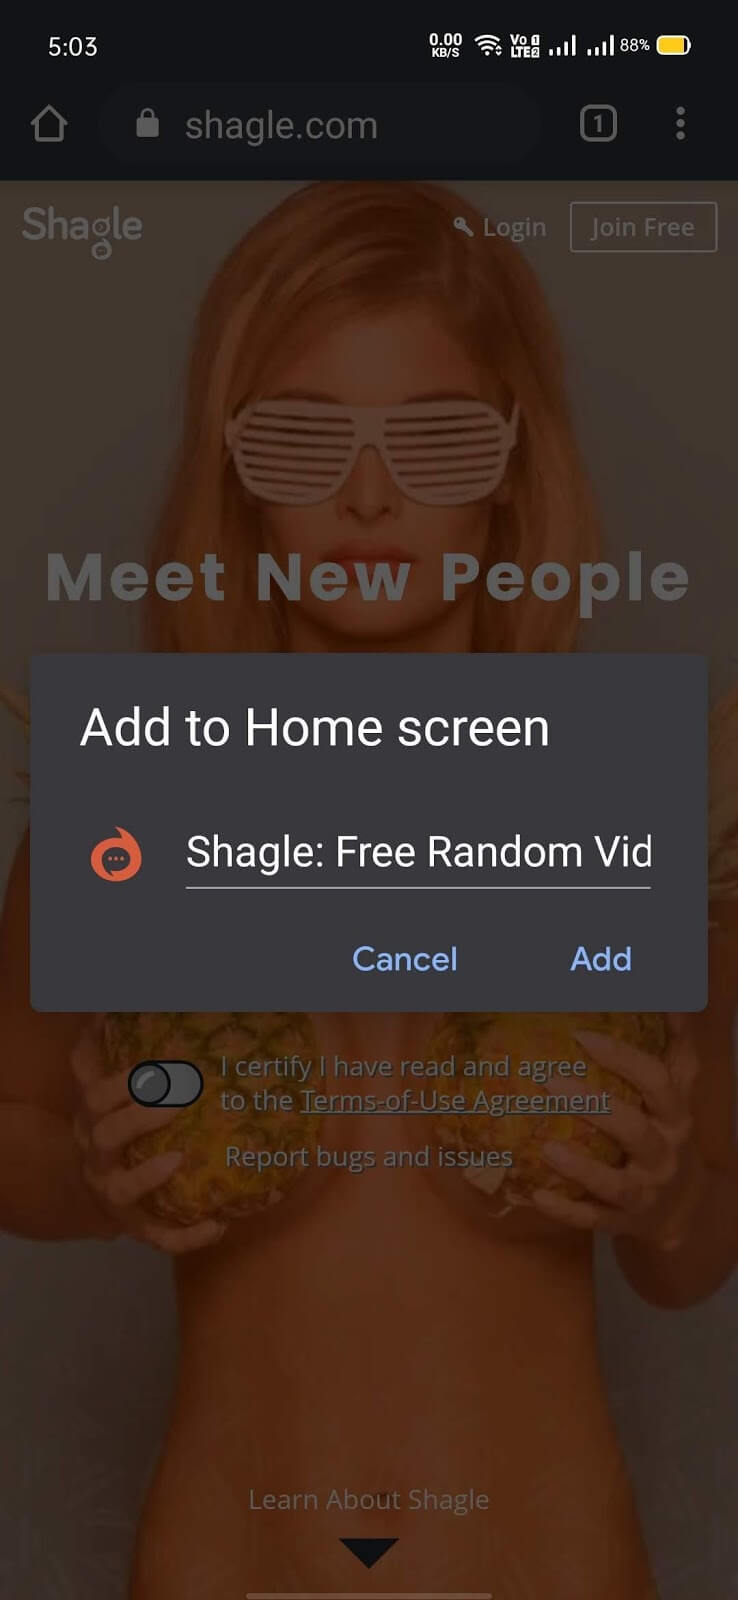 Shagle, Shagle For Android, Shagle For iOS, Shagle For Desktop, Shagle For Windows